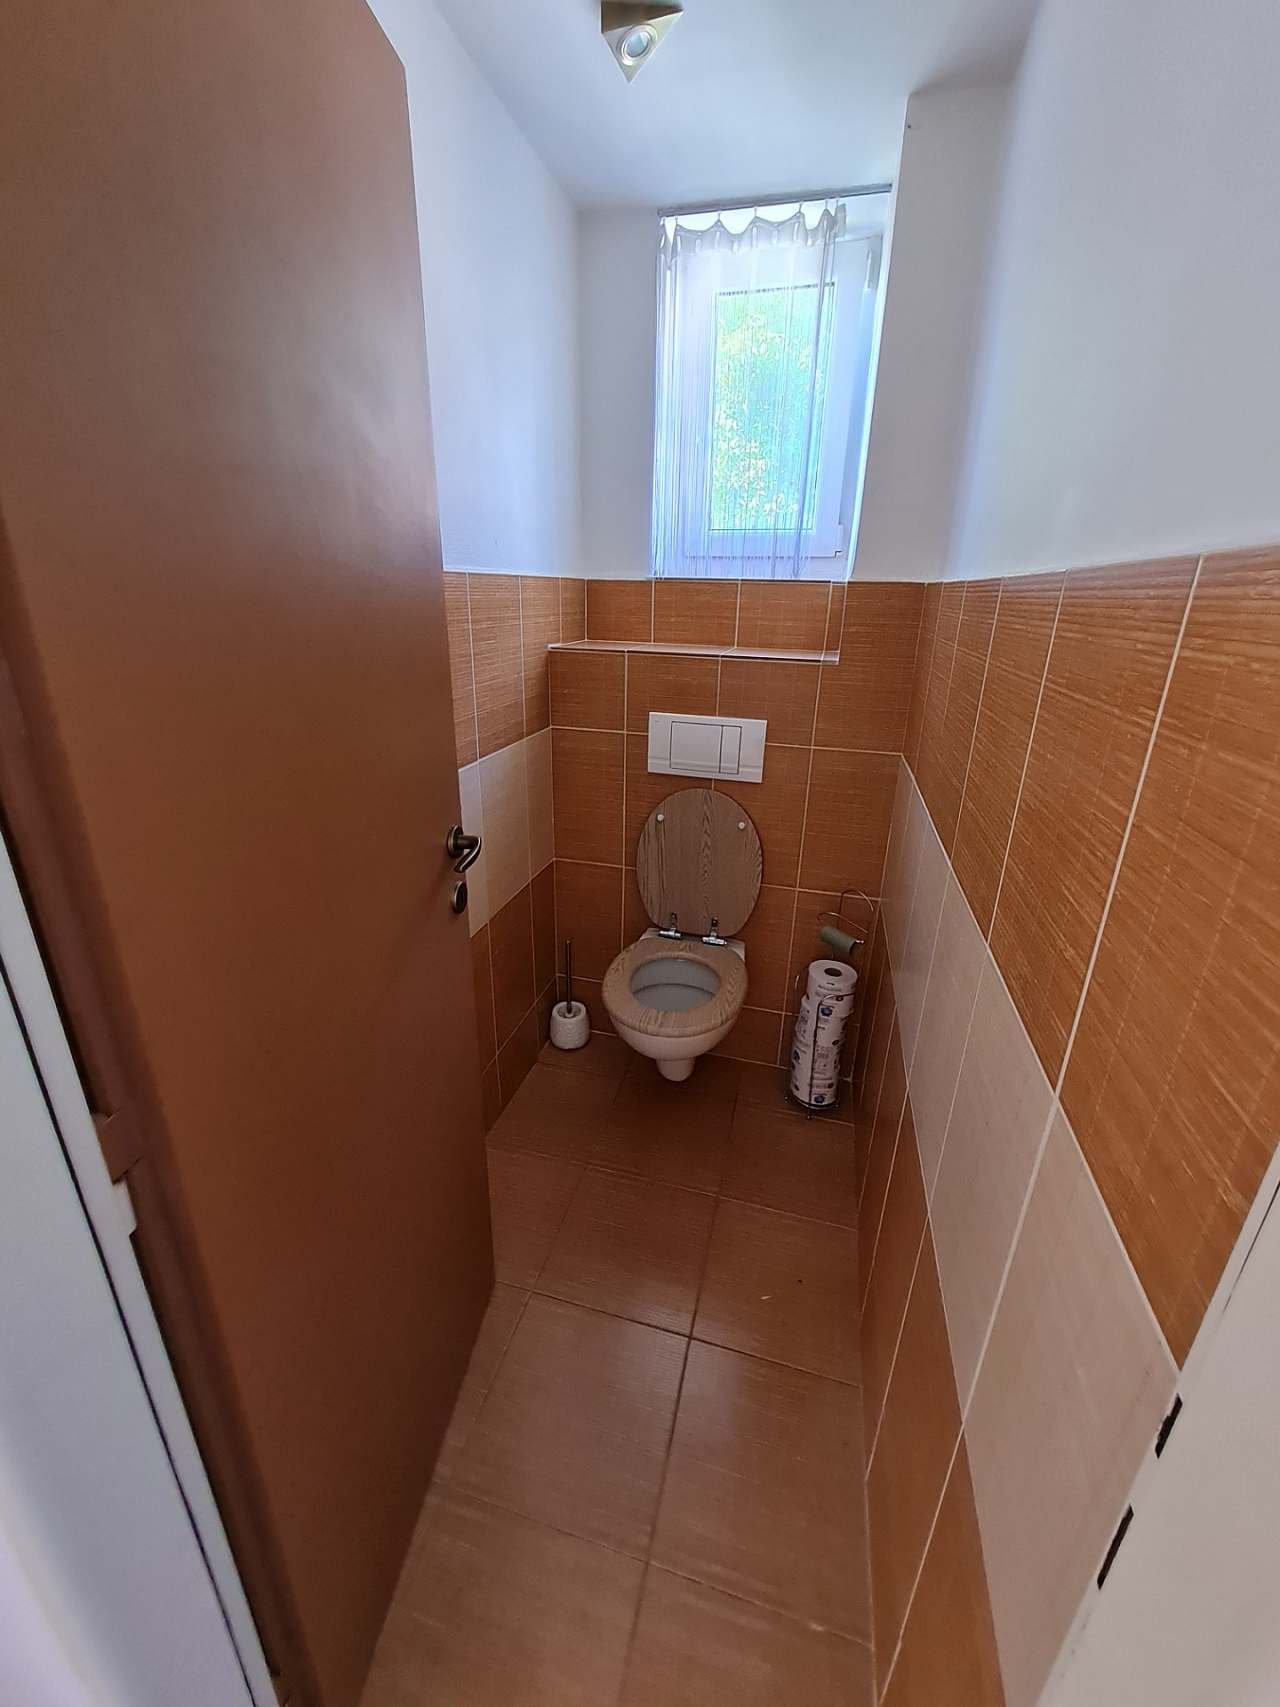 WC appartamento inferiore